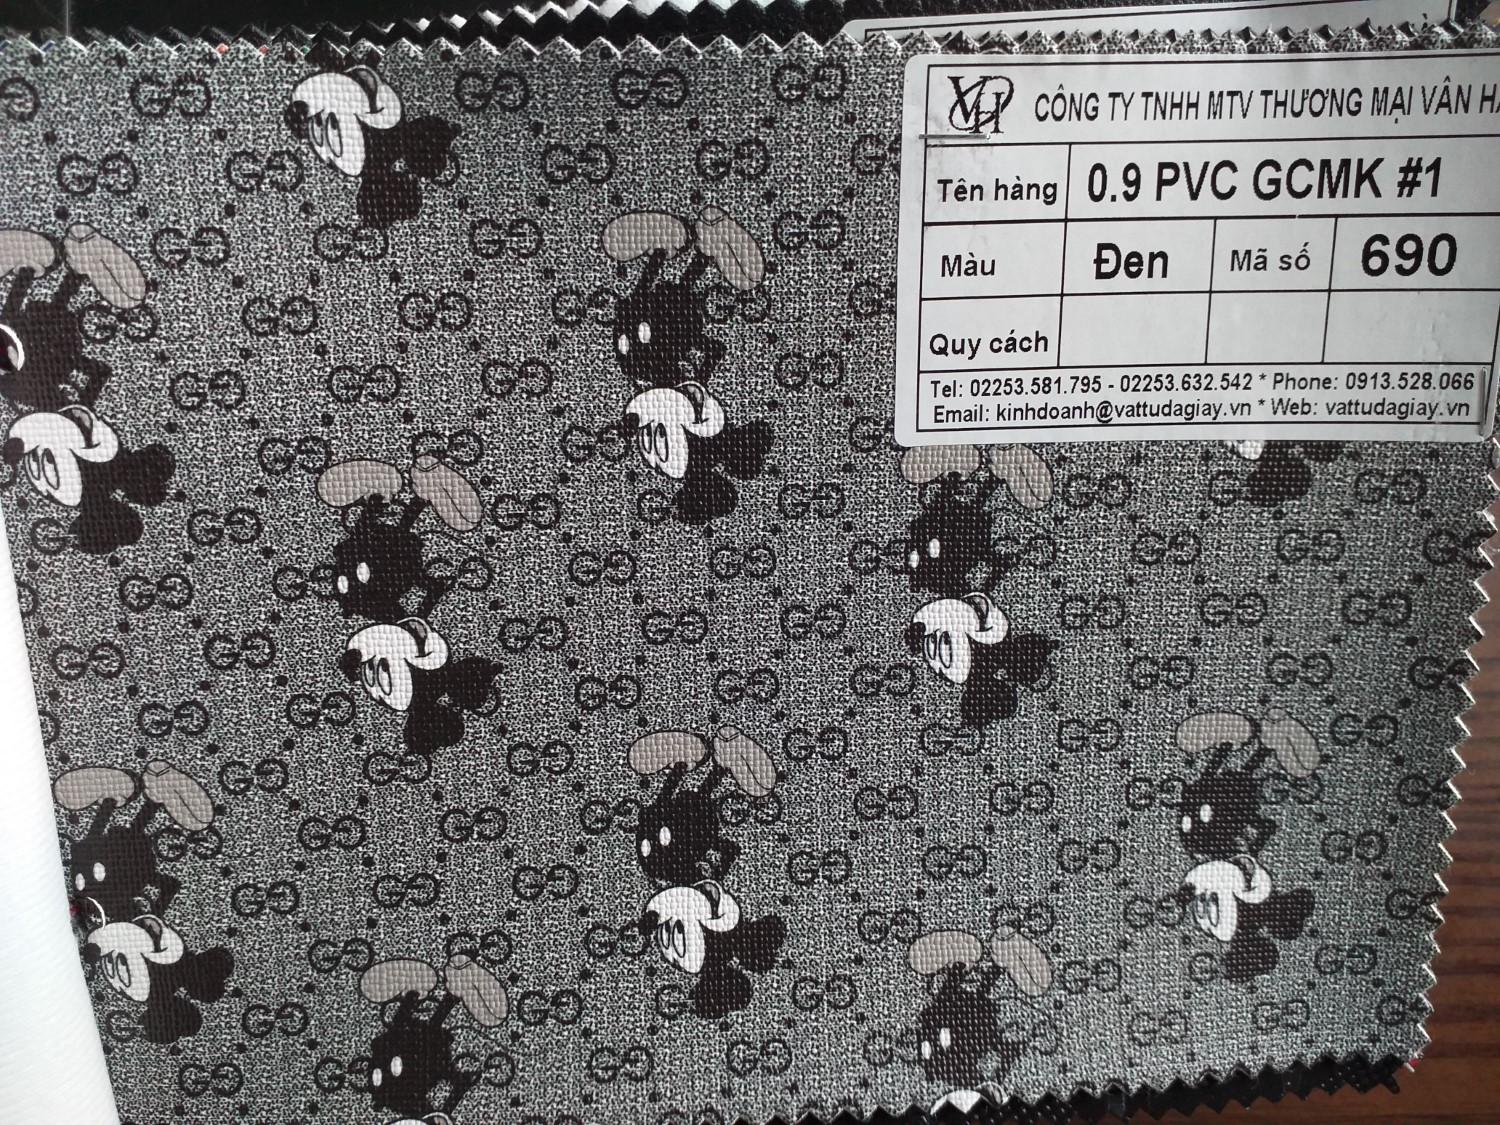 0.9 pvc gcmk 1 đen mã 690 - 0.9 PVC GCMK #1 đen mã 690